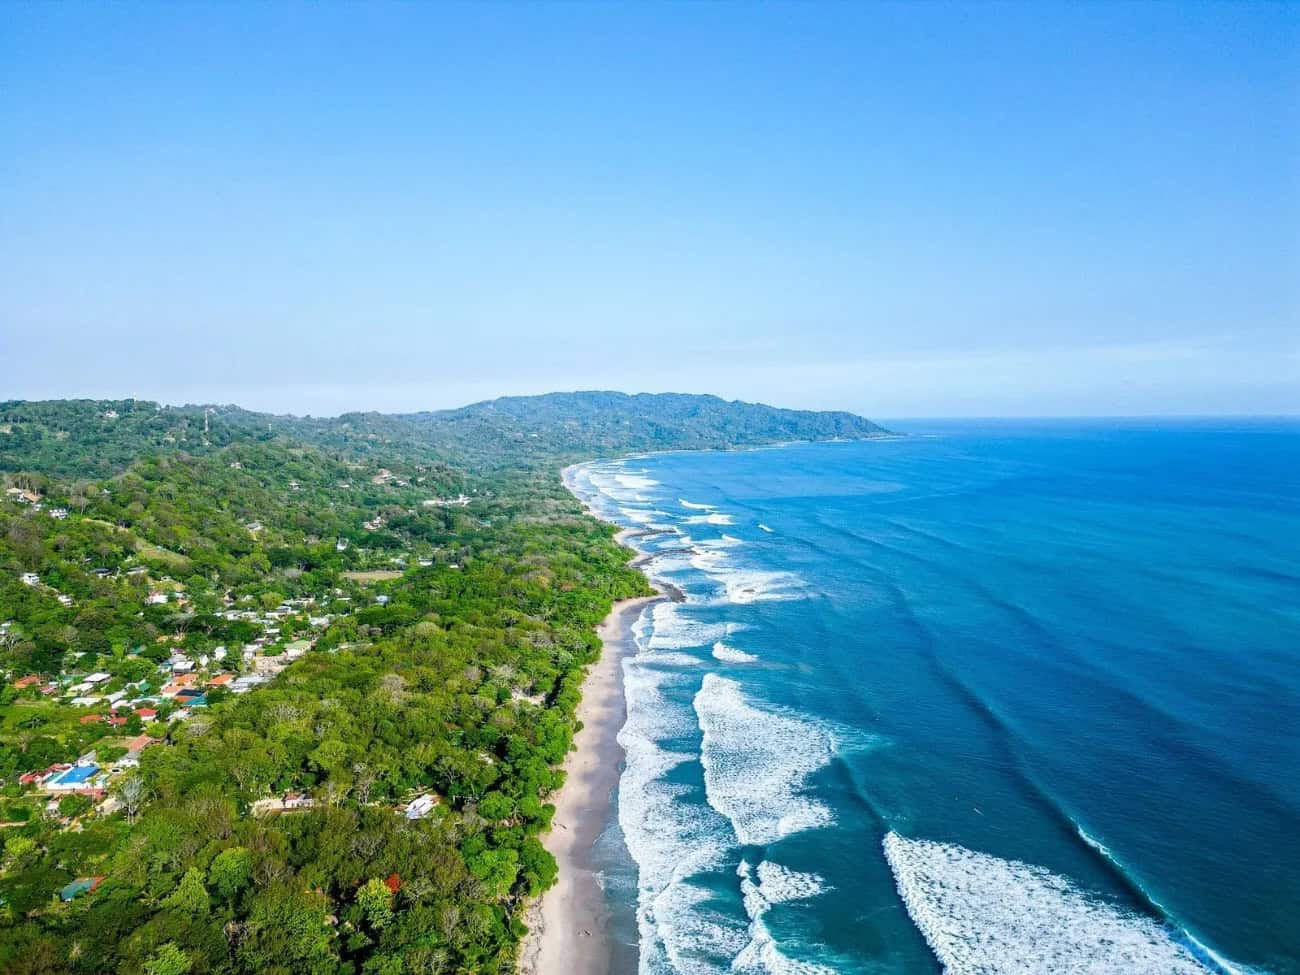 Santa Teresa, Costa Rica Aerial View